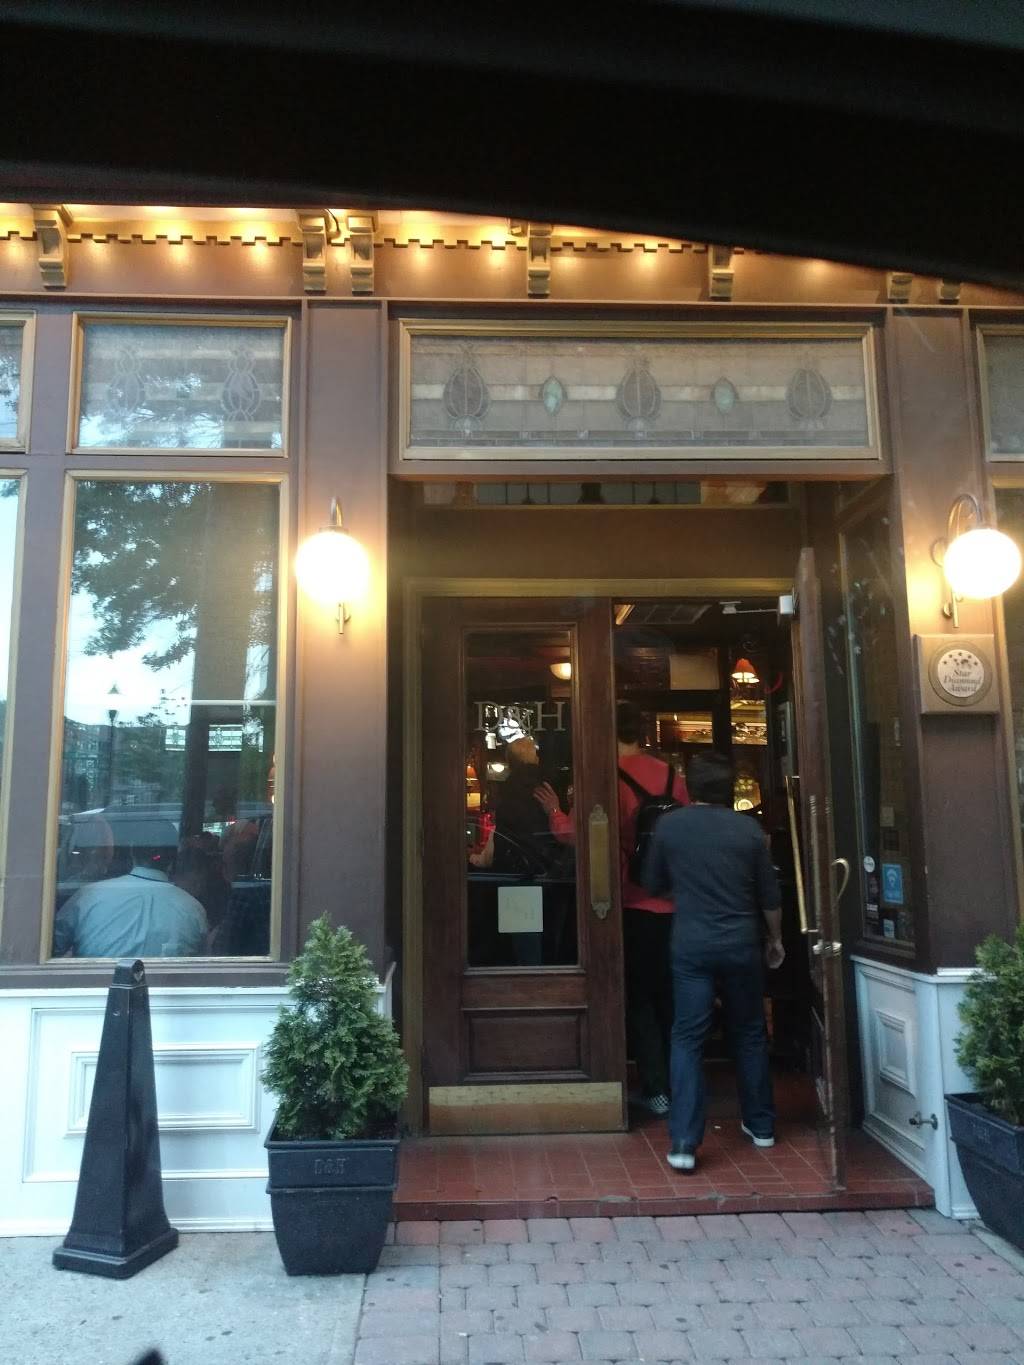 Dino & Harrys Steakhouse | restaurant | 163 14th St, Hoboken, NJ 07030, USA | 2016596202 OR +1 201-659-6202